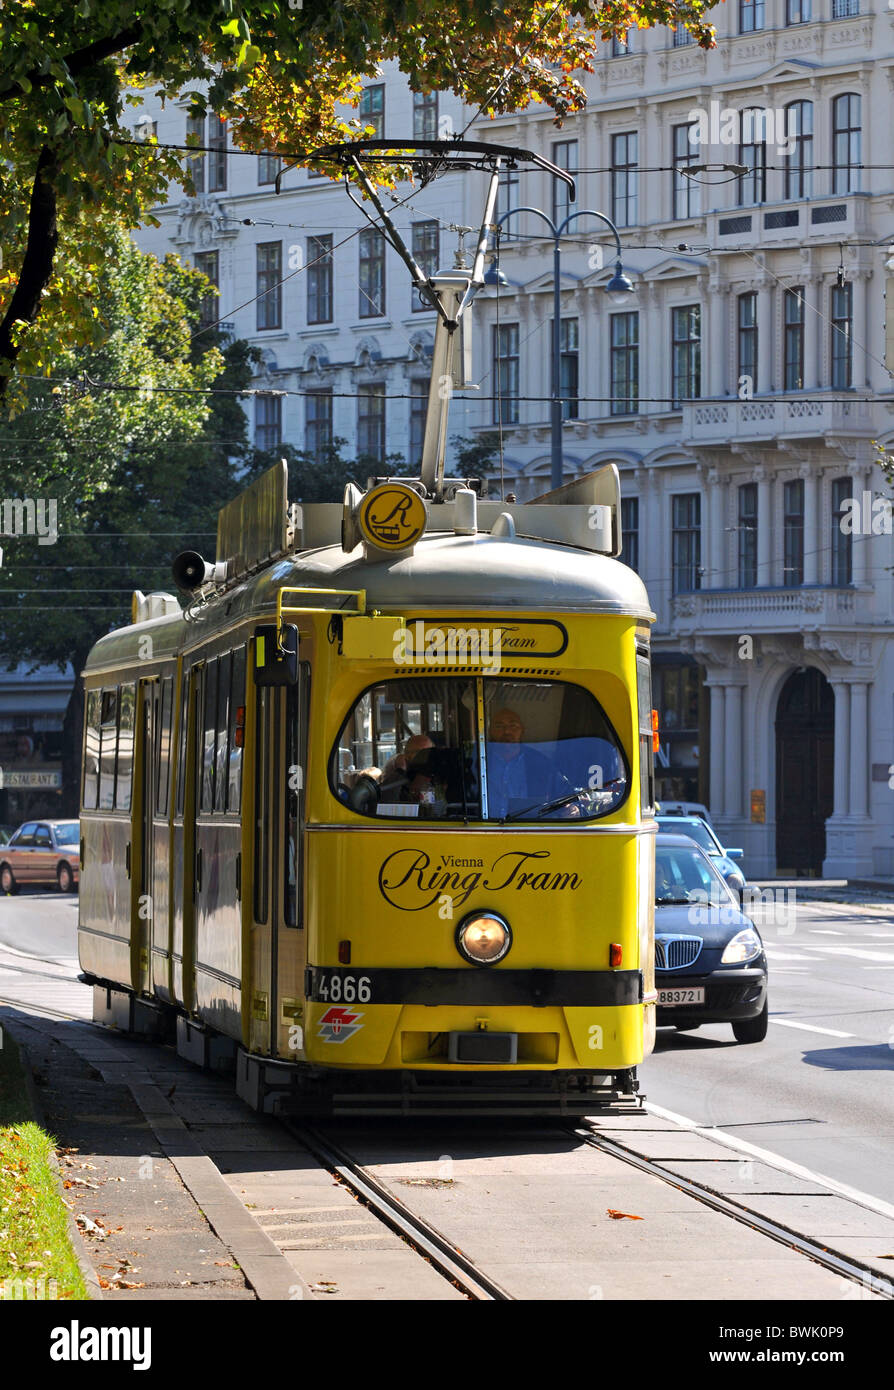 Vienna Ring Tram Sightseeing tickets | Vienna